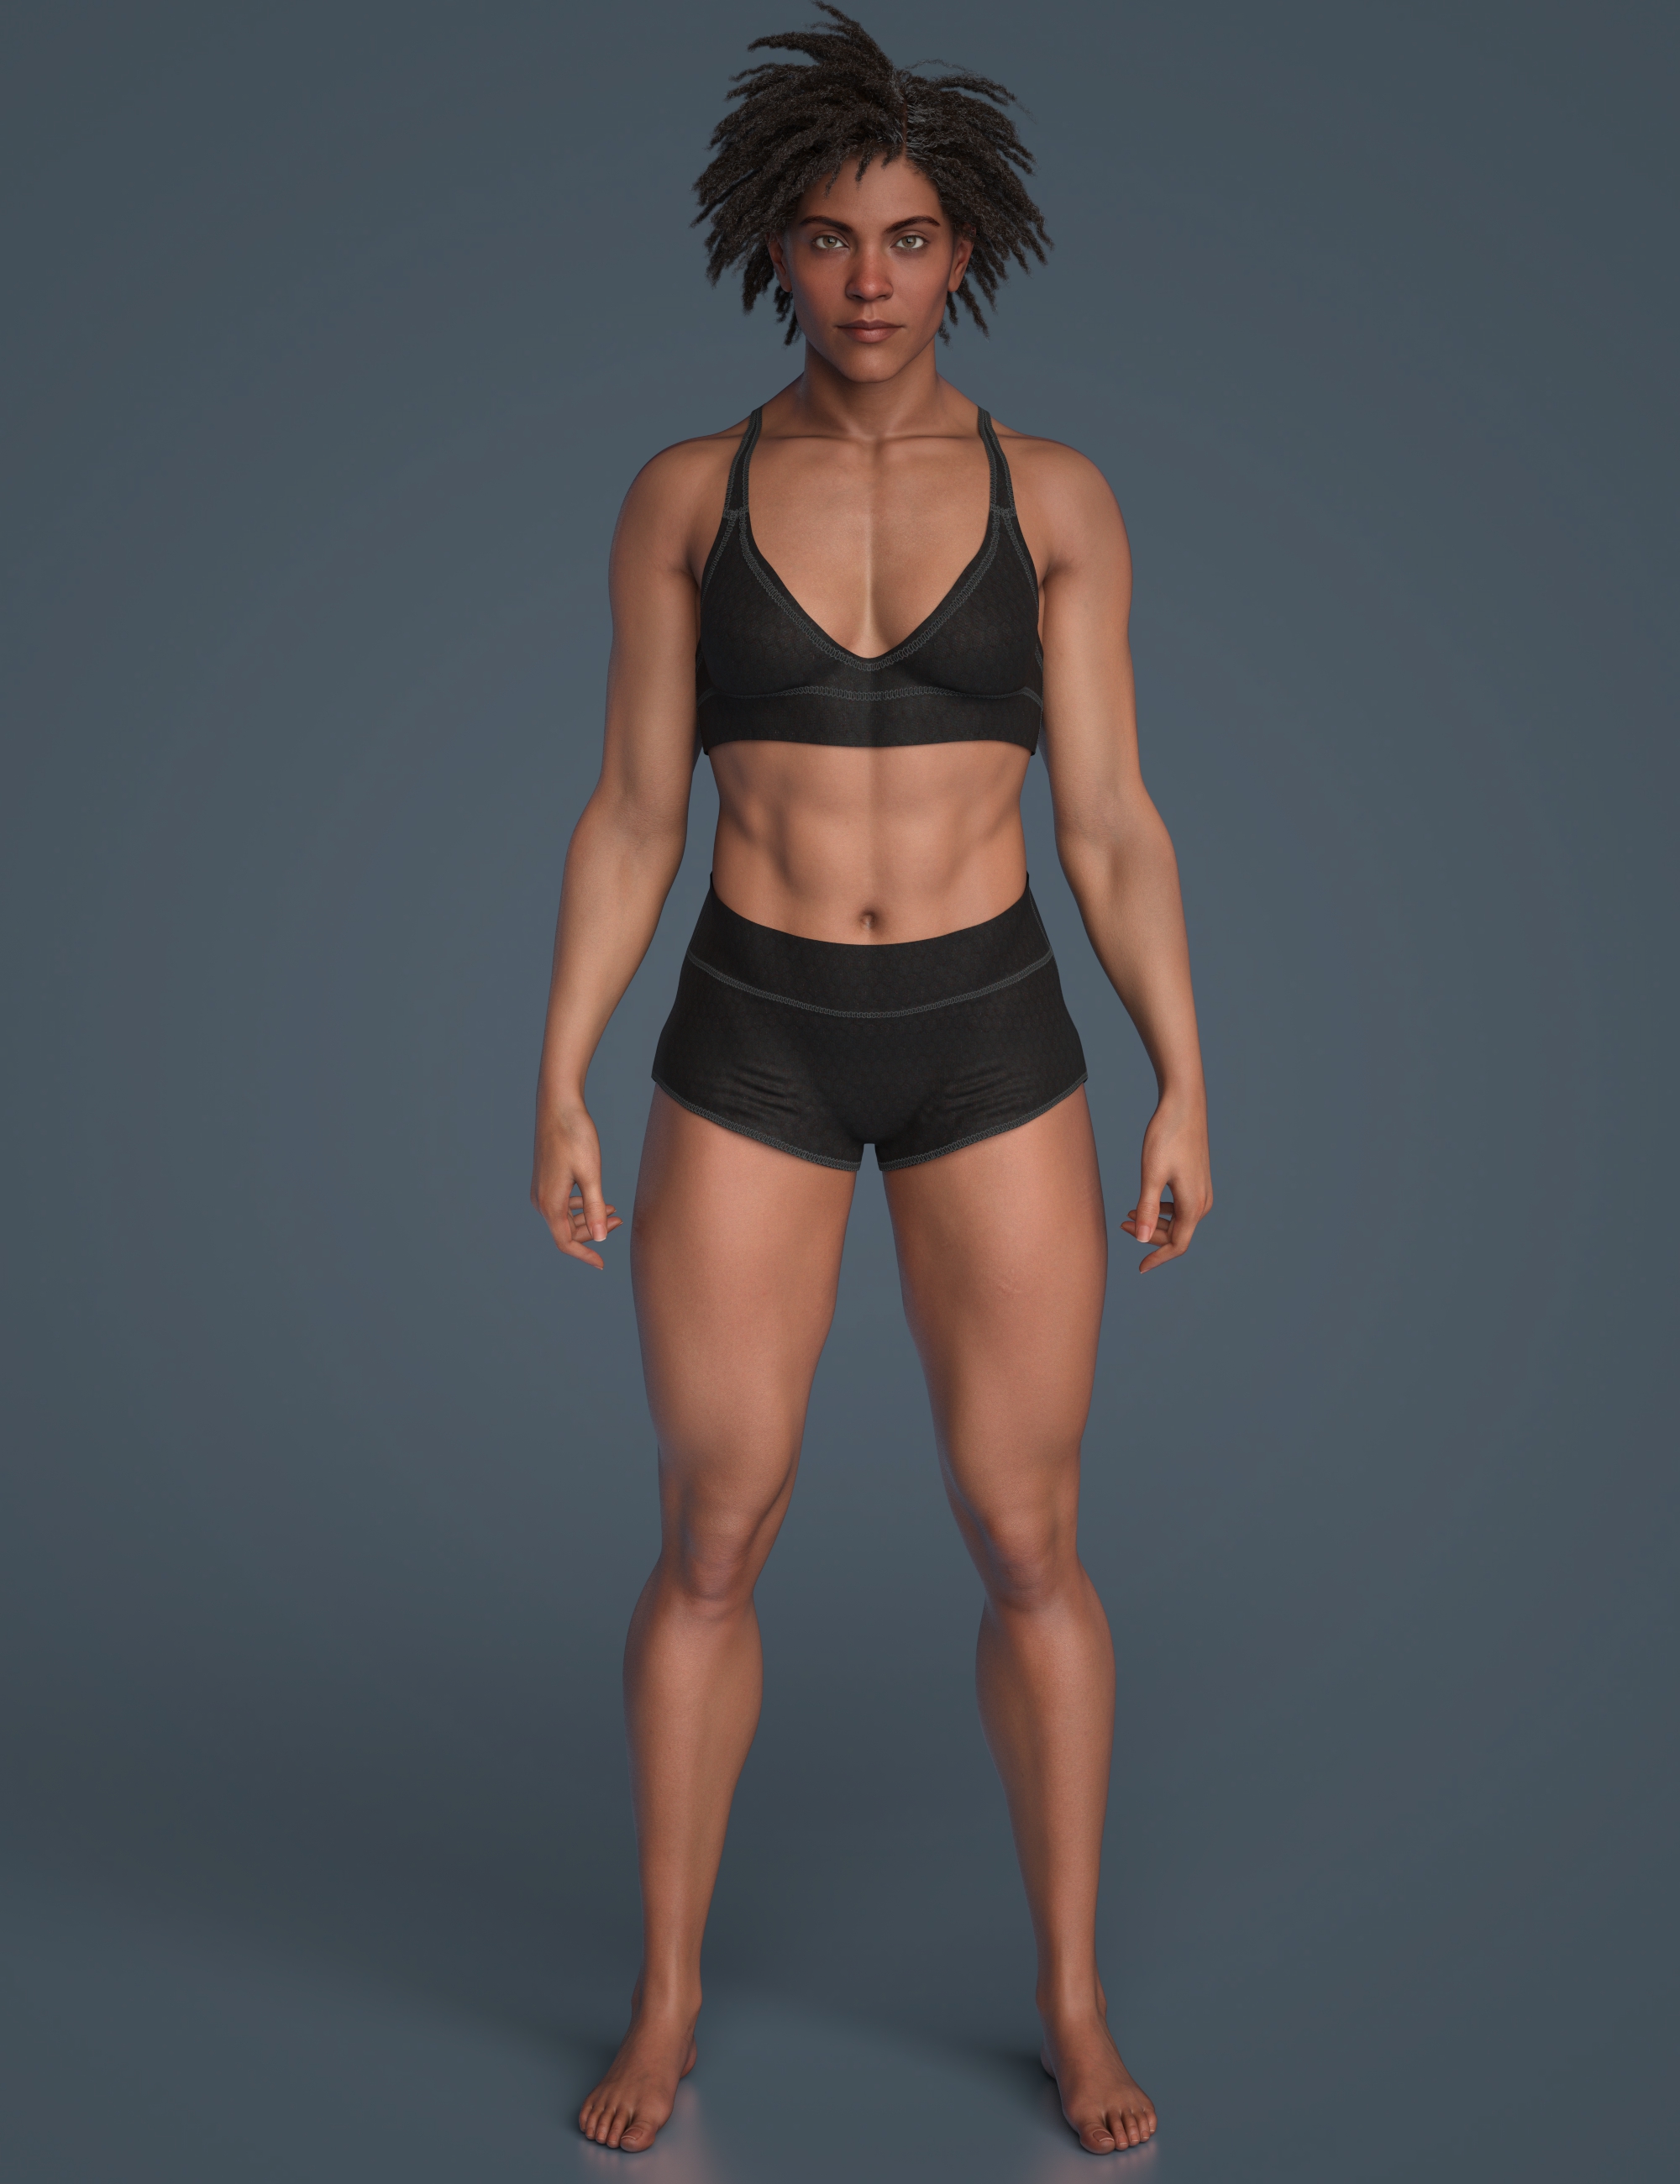 Zahara 9 Muscular Shape Add-On by: , 3D Models by Daz 3D